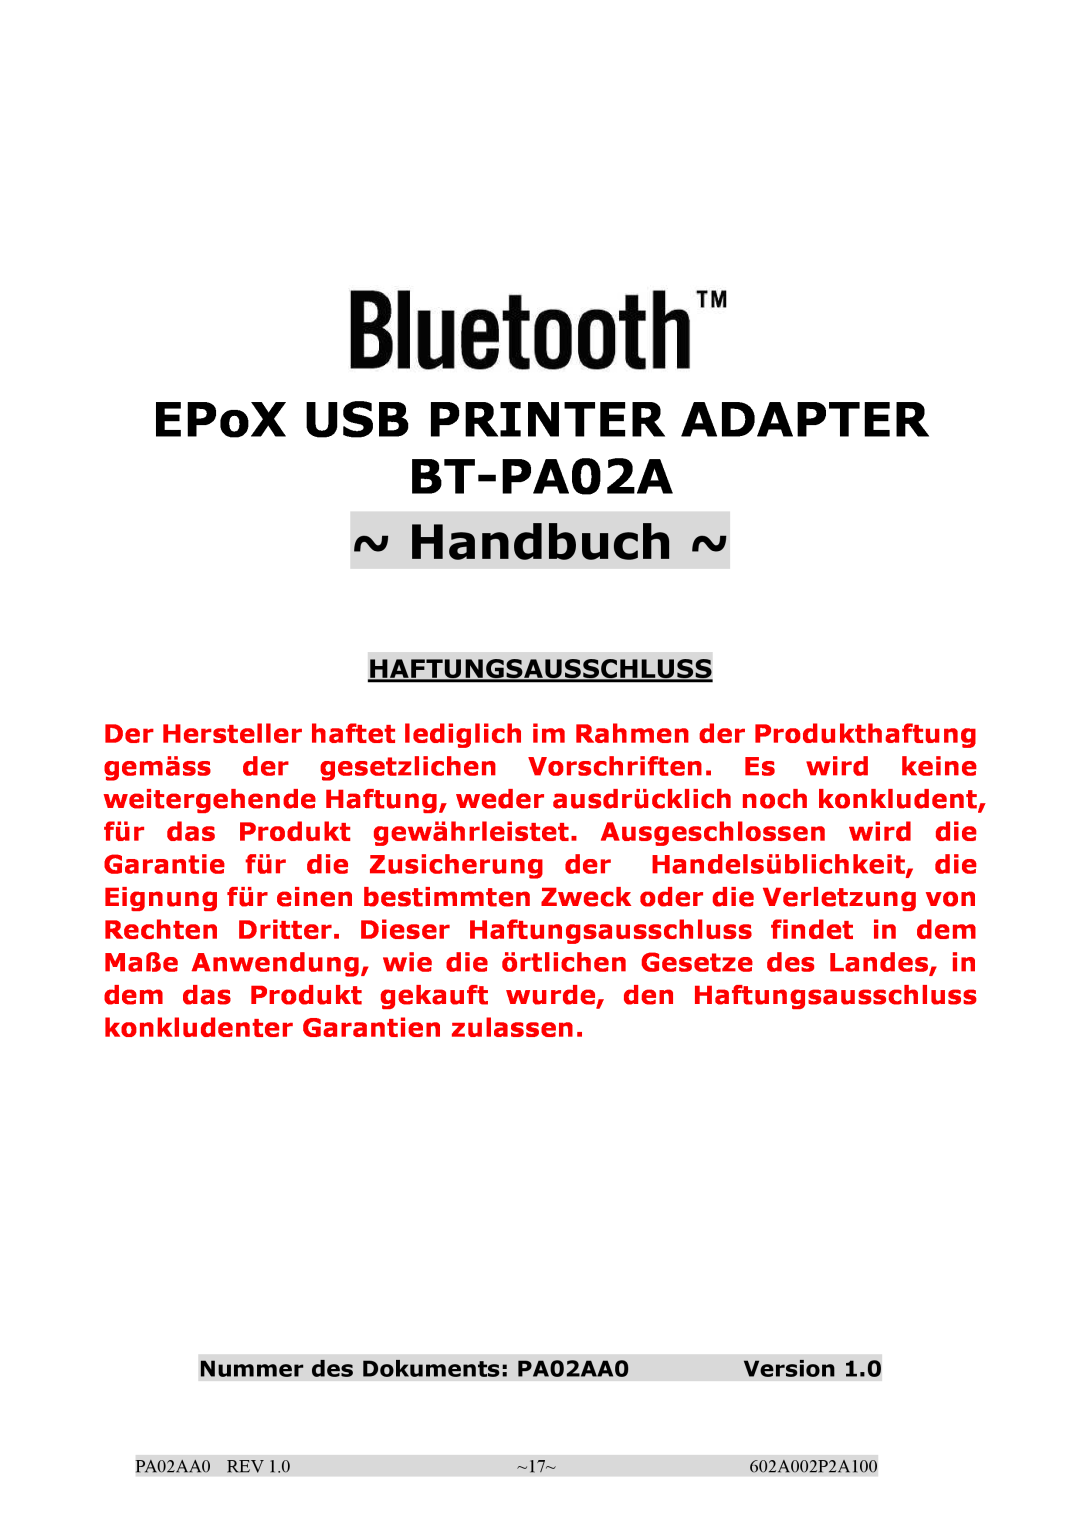 EPoX Computer manual EPoX USB PRINTER ADAPTER BT-PA02A ~ Handbuch ~, Haftungsausschluss 